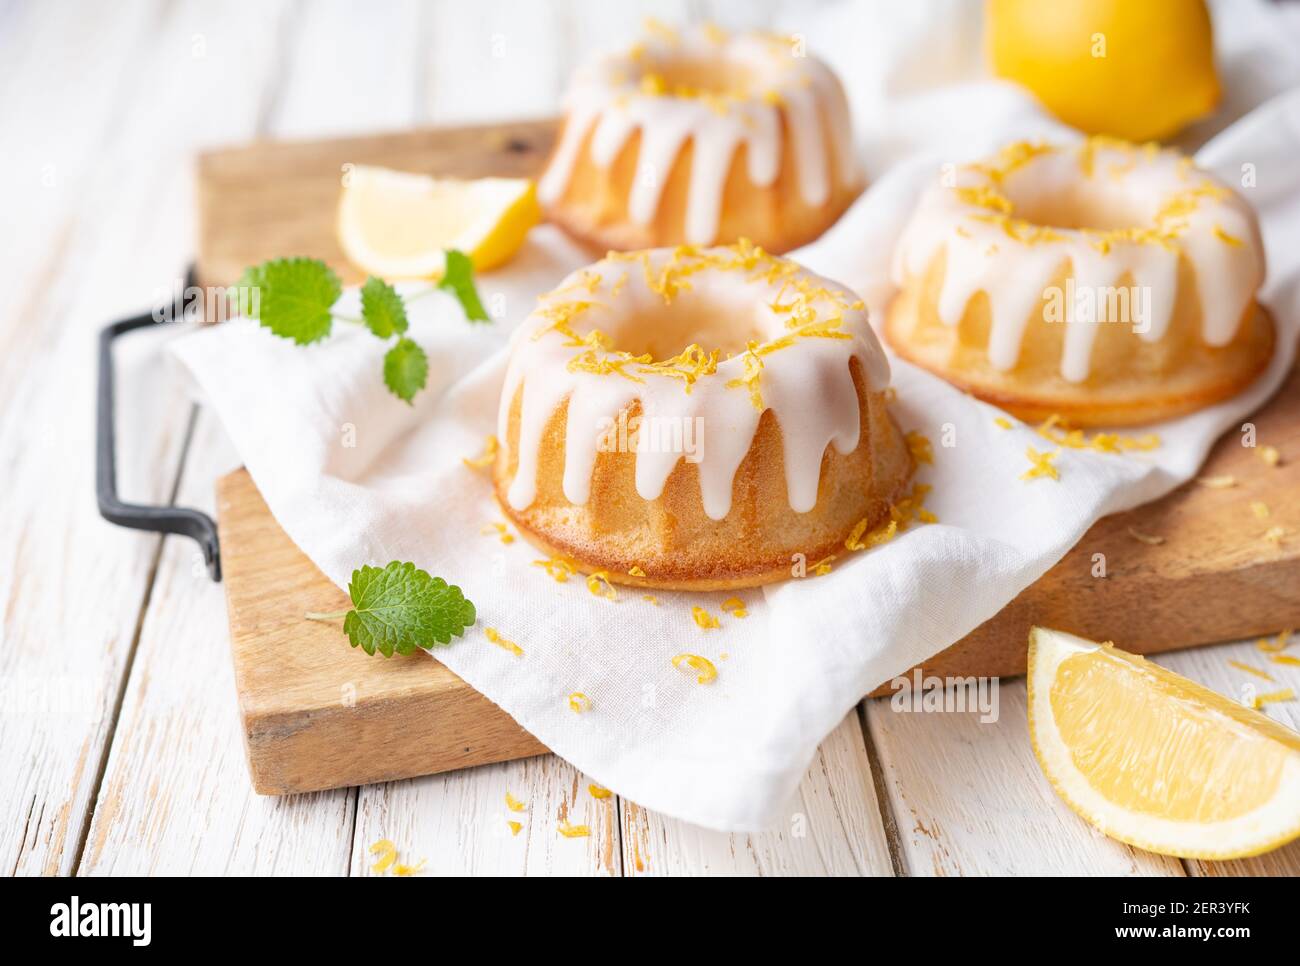 Petits gâteaux au citron acidulés nappés de glaçage au citron Banque D'Images